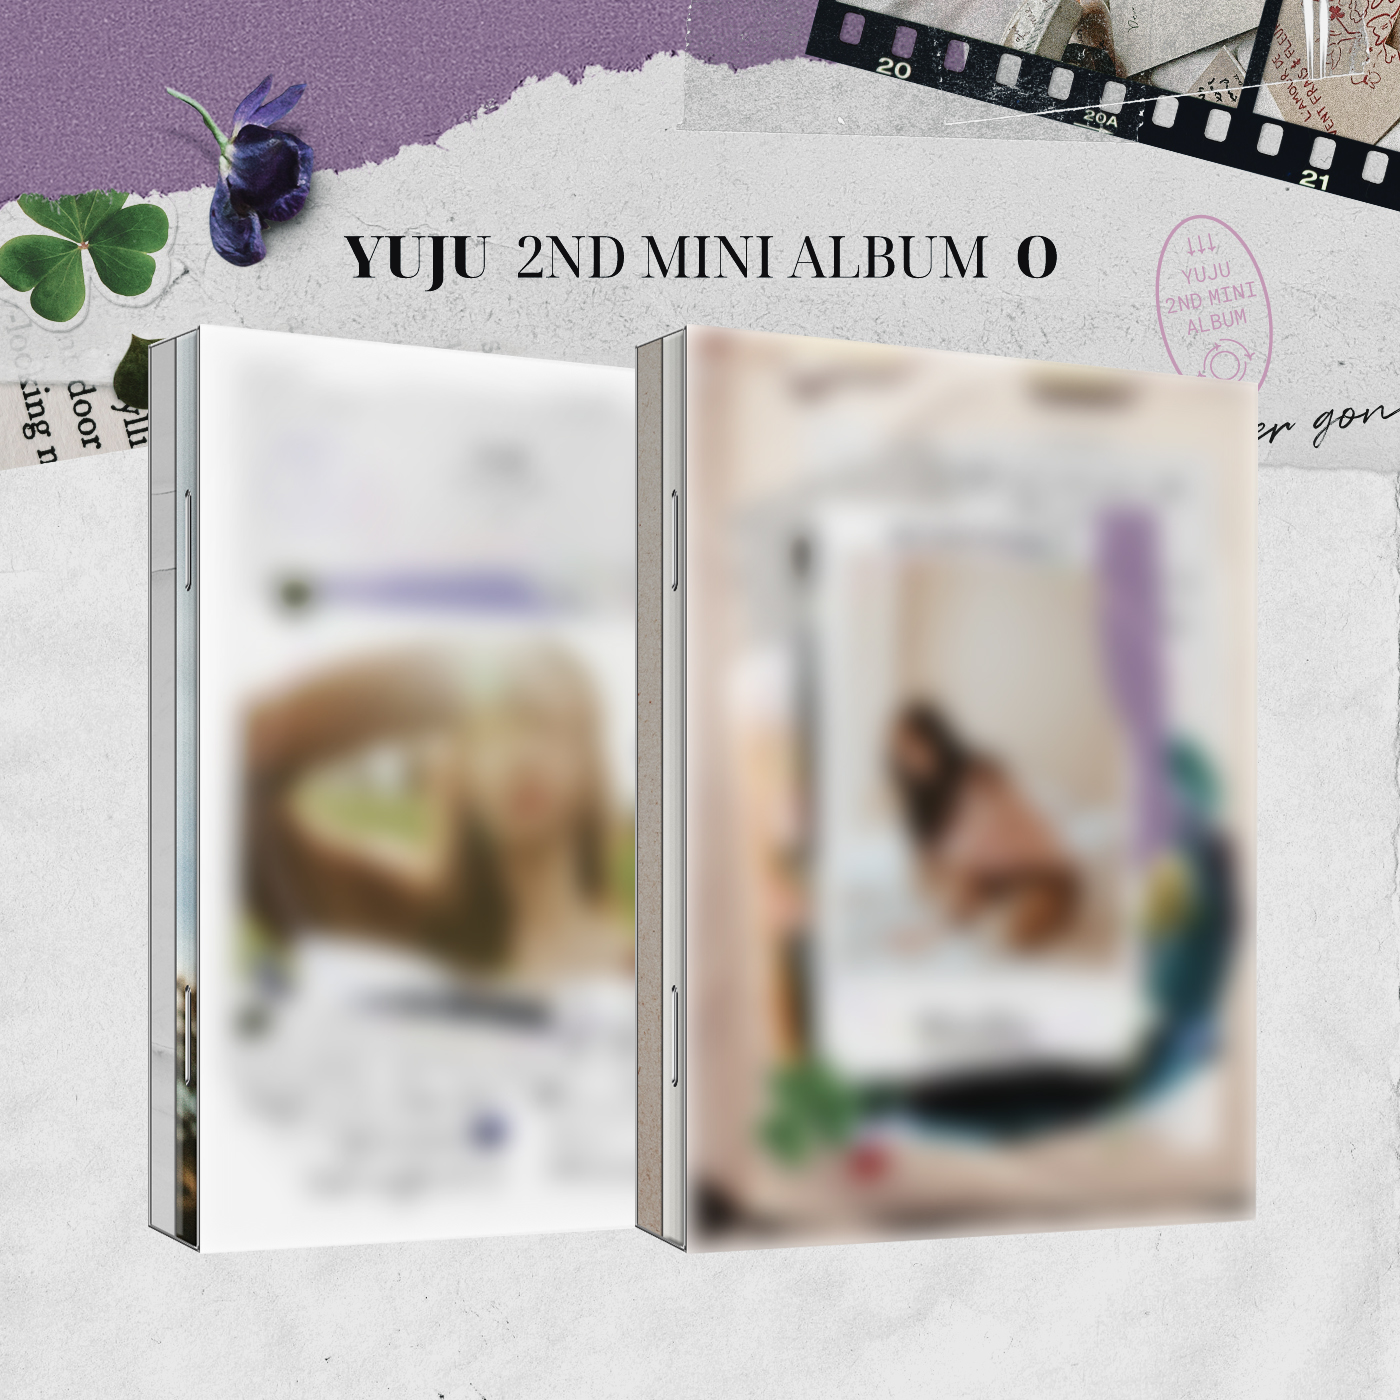 [2CD セット] YUJU - ミニアルバム2集 [O] (A Ver. + B Ver.)